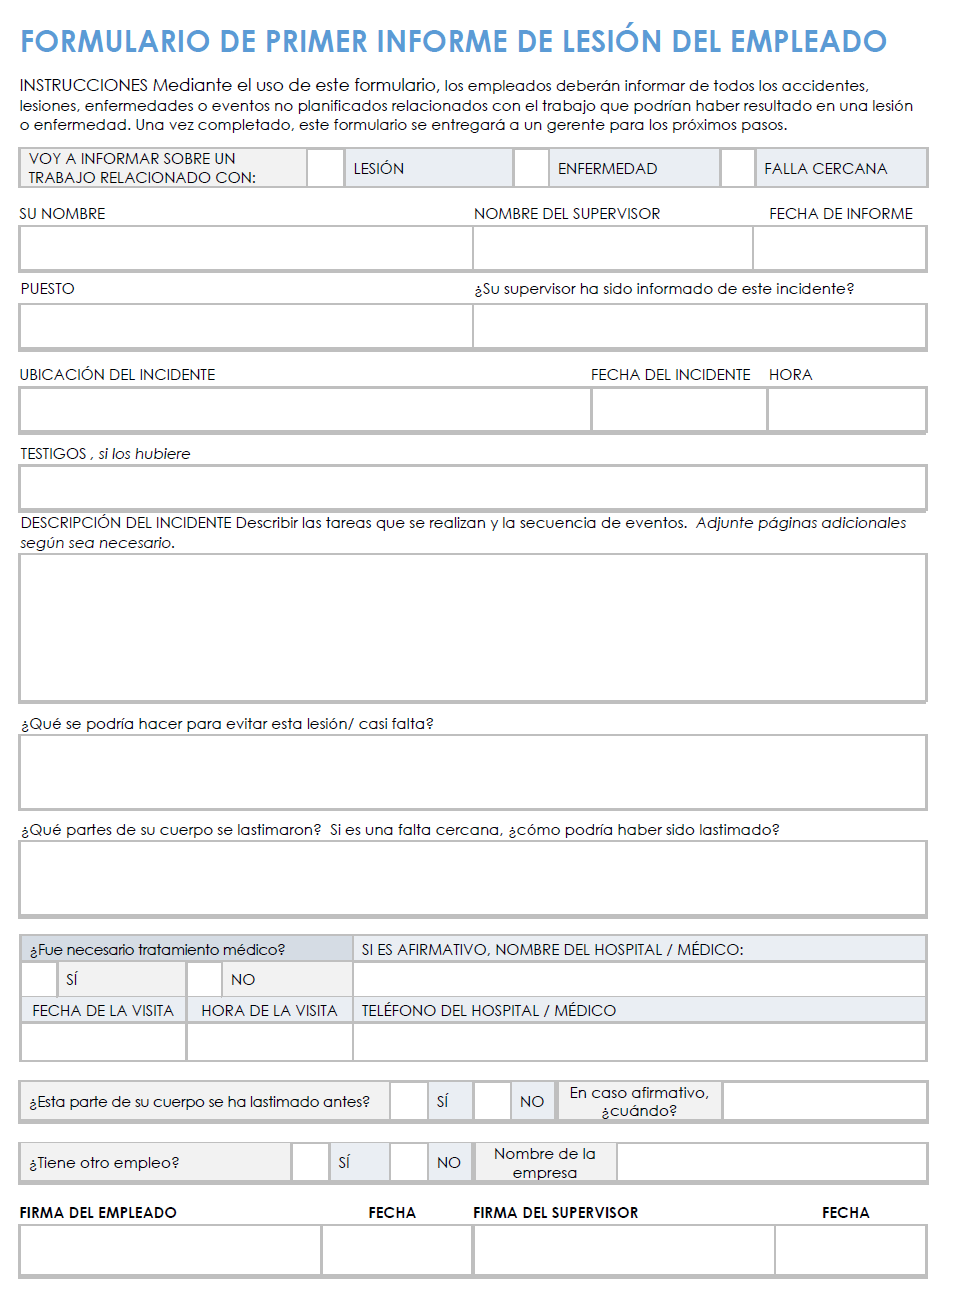 Plantilla de formulario de primer informe de lesión del empleado